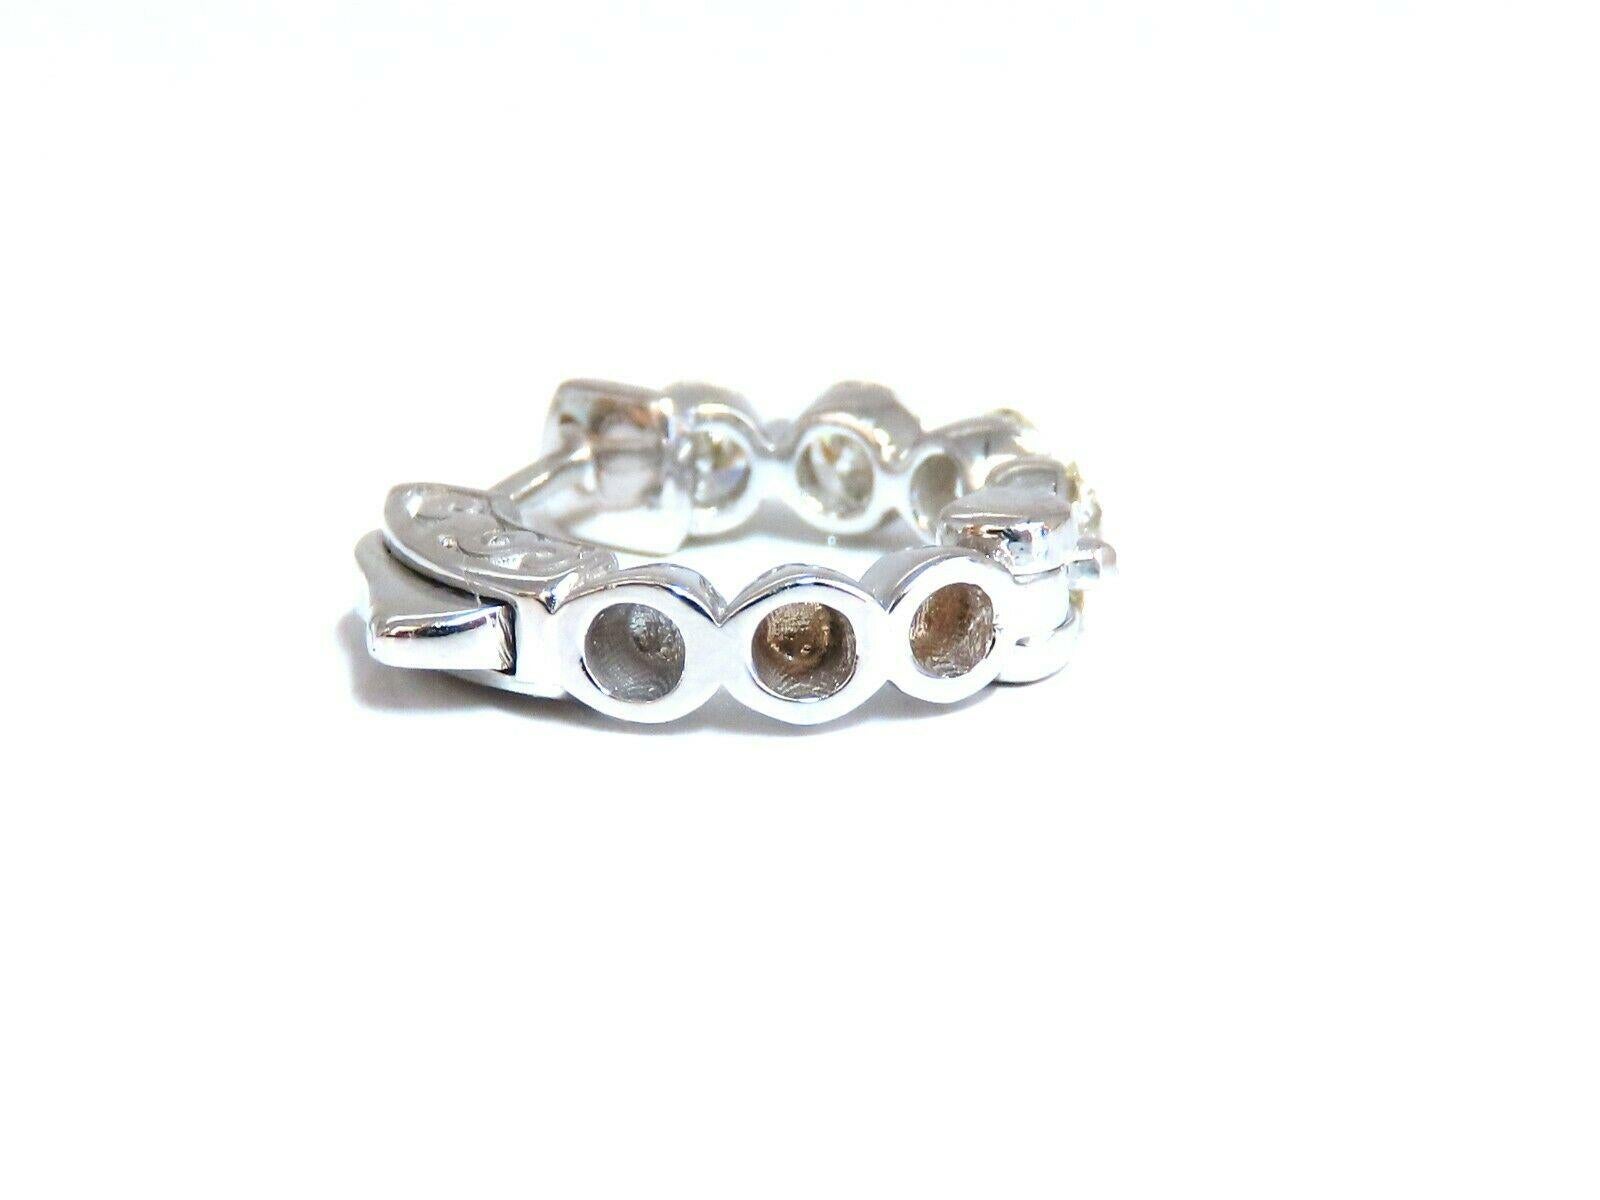 Dime-sized natürlichen Diamant-Reifen-Ohrringe.

Einzeln geteilte Zinkenausführung

1.30 Karat runde Brillanten

G Farbe vs2 Klarheit

14 Karat Weißgold 4,7 g

16.5 mm Breite von vorne nach hinten

3.3 mm dick bei der